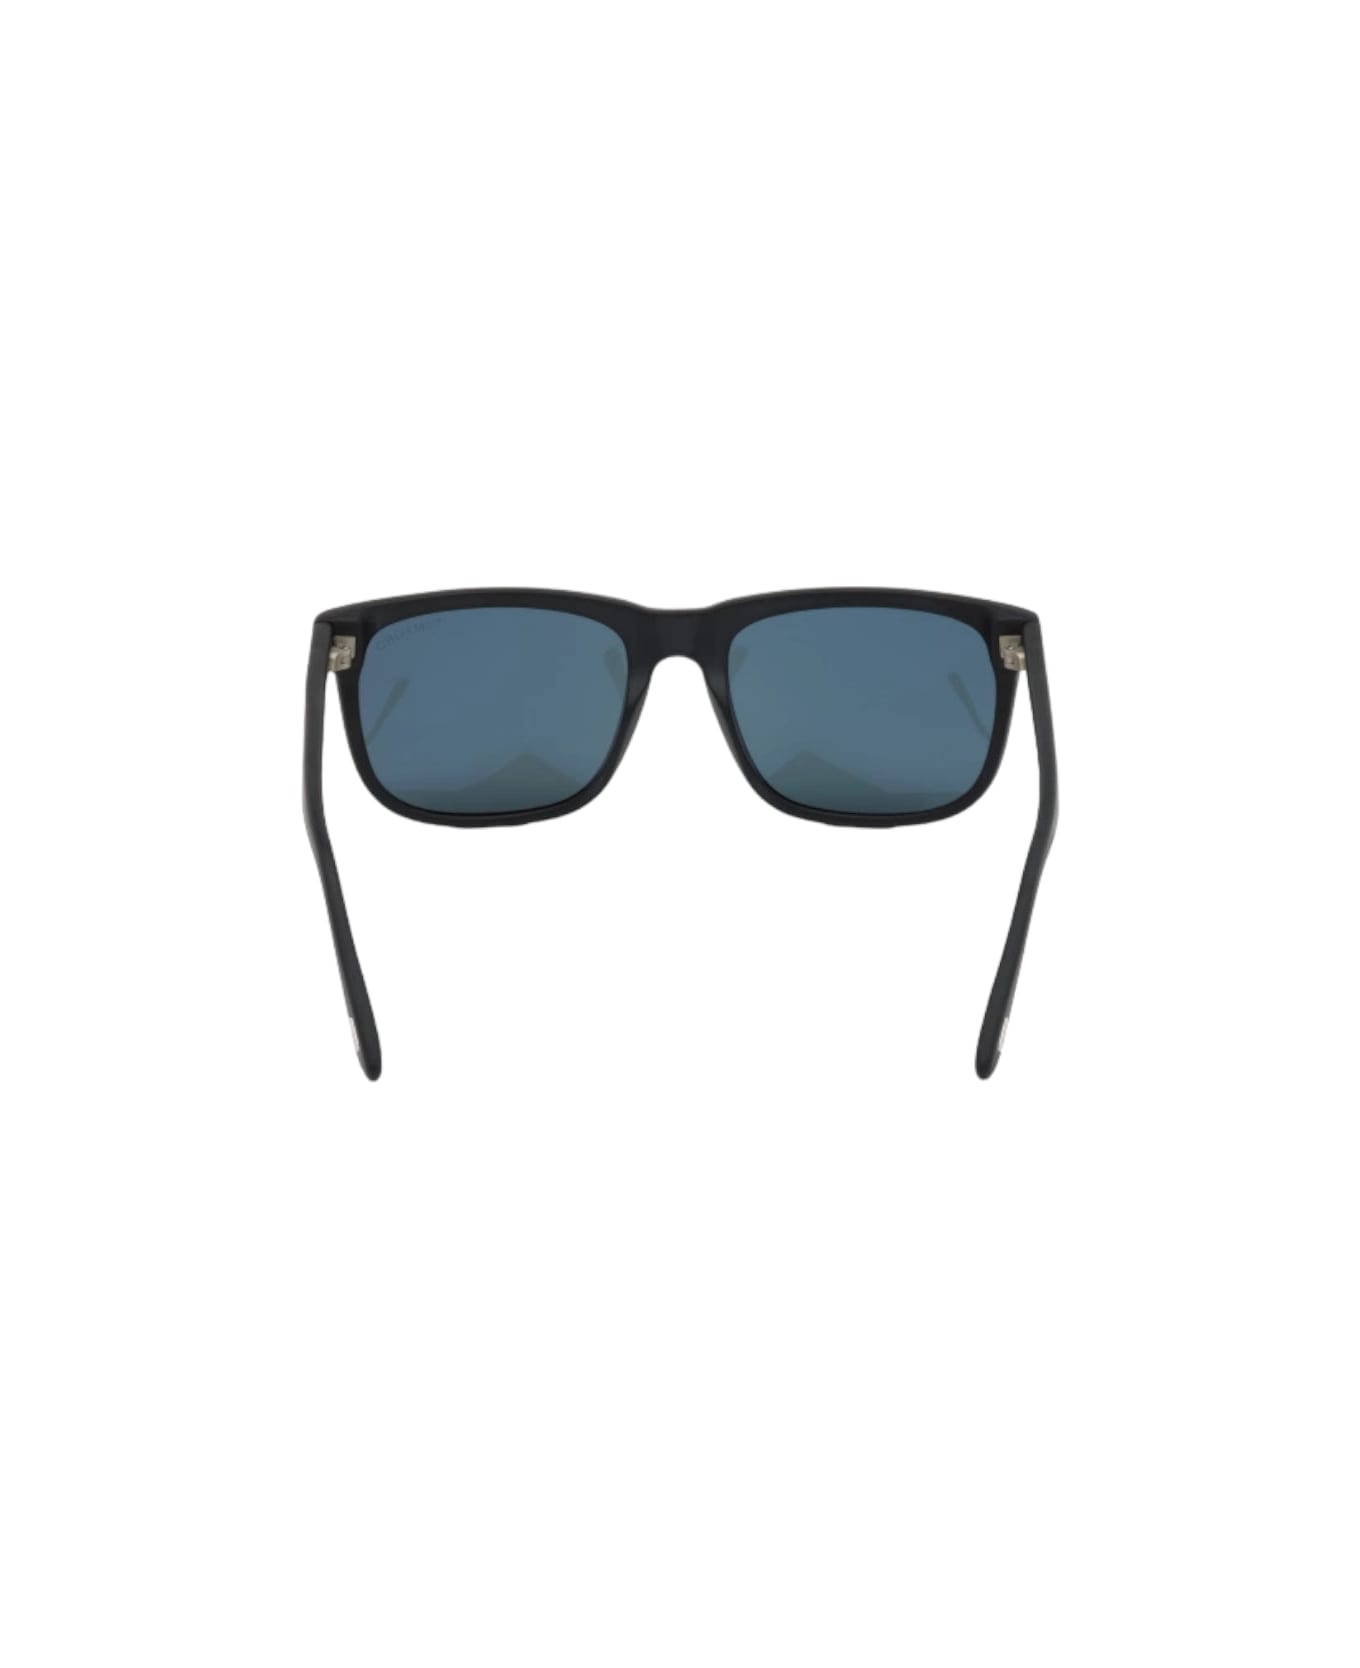 Tom Ford Eyewear Stephenson - Ft 775 Sunglasses サングラス